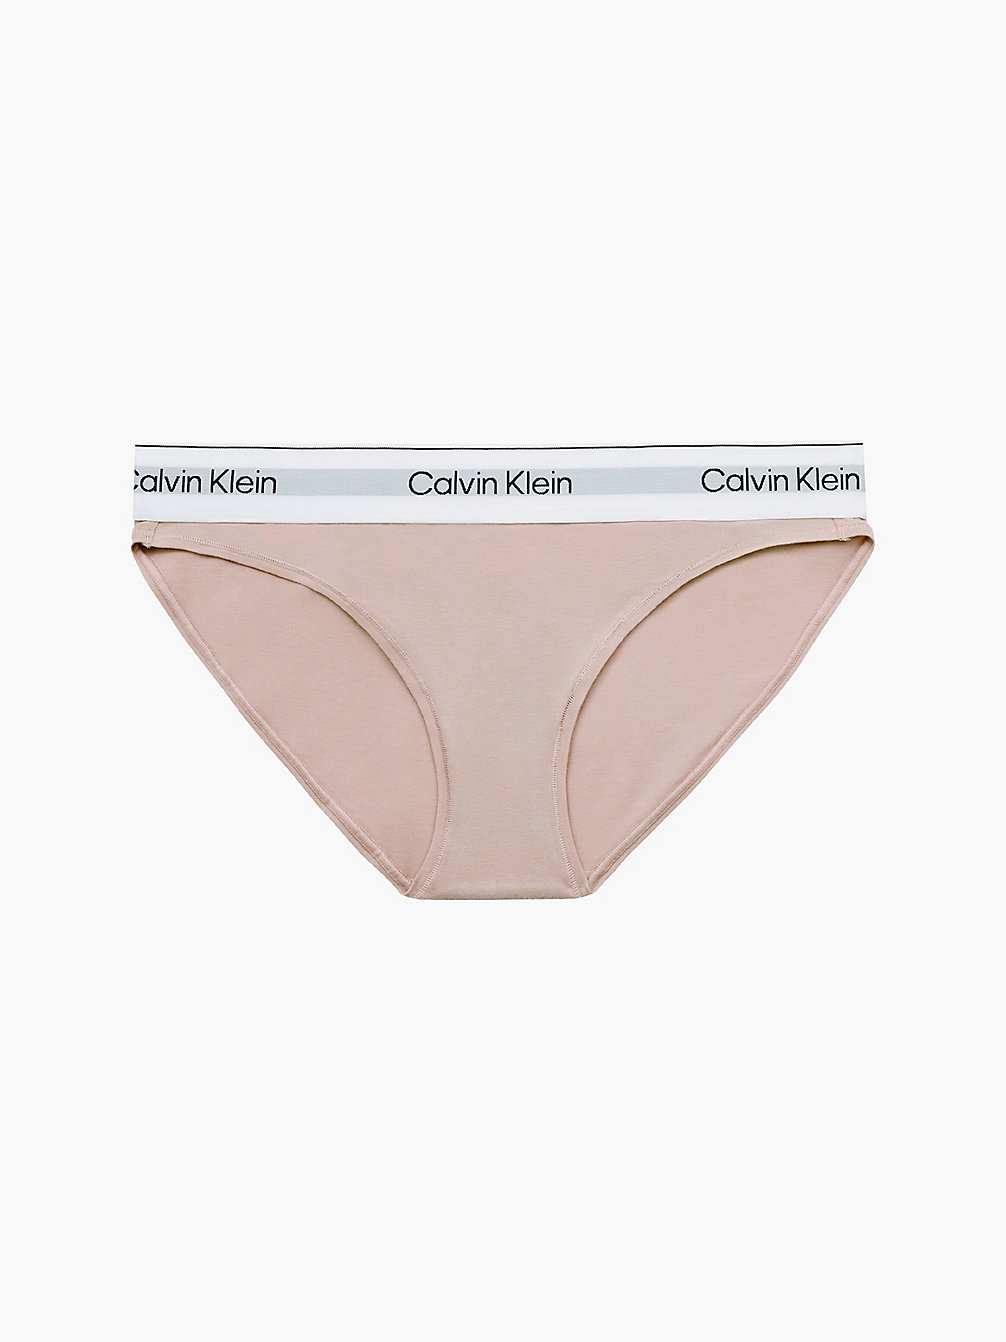 CEDAR > Слипы - Modern Cotton > undefined Женщины - Calvin Klein